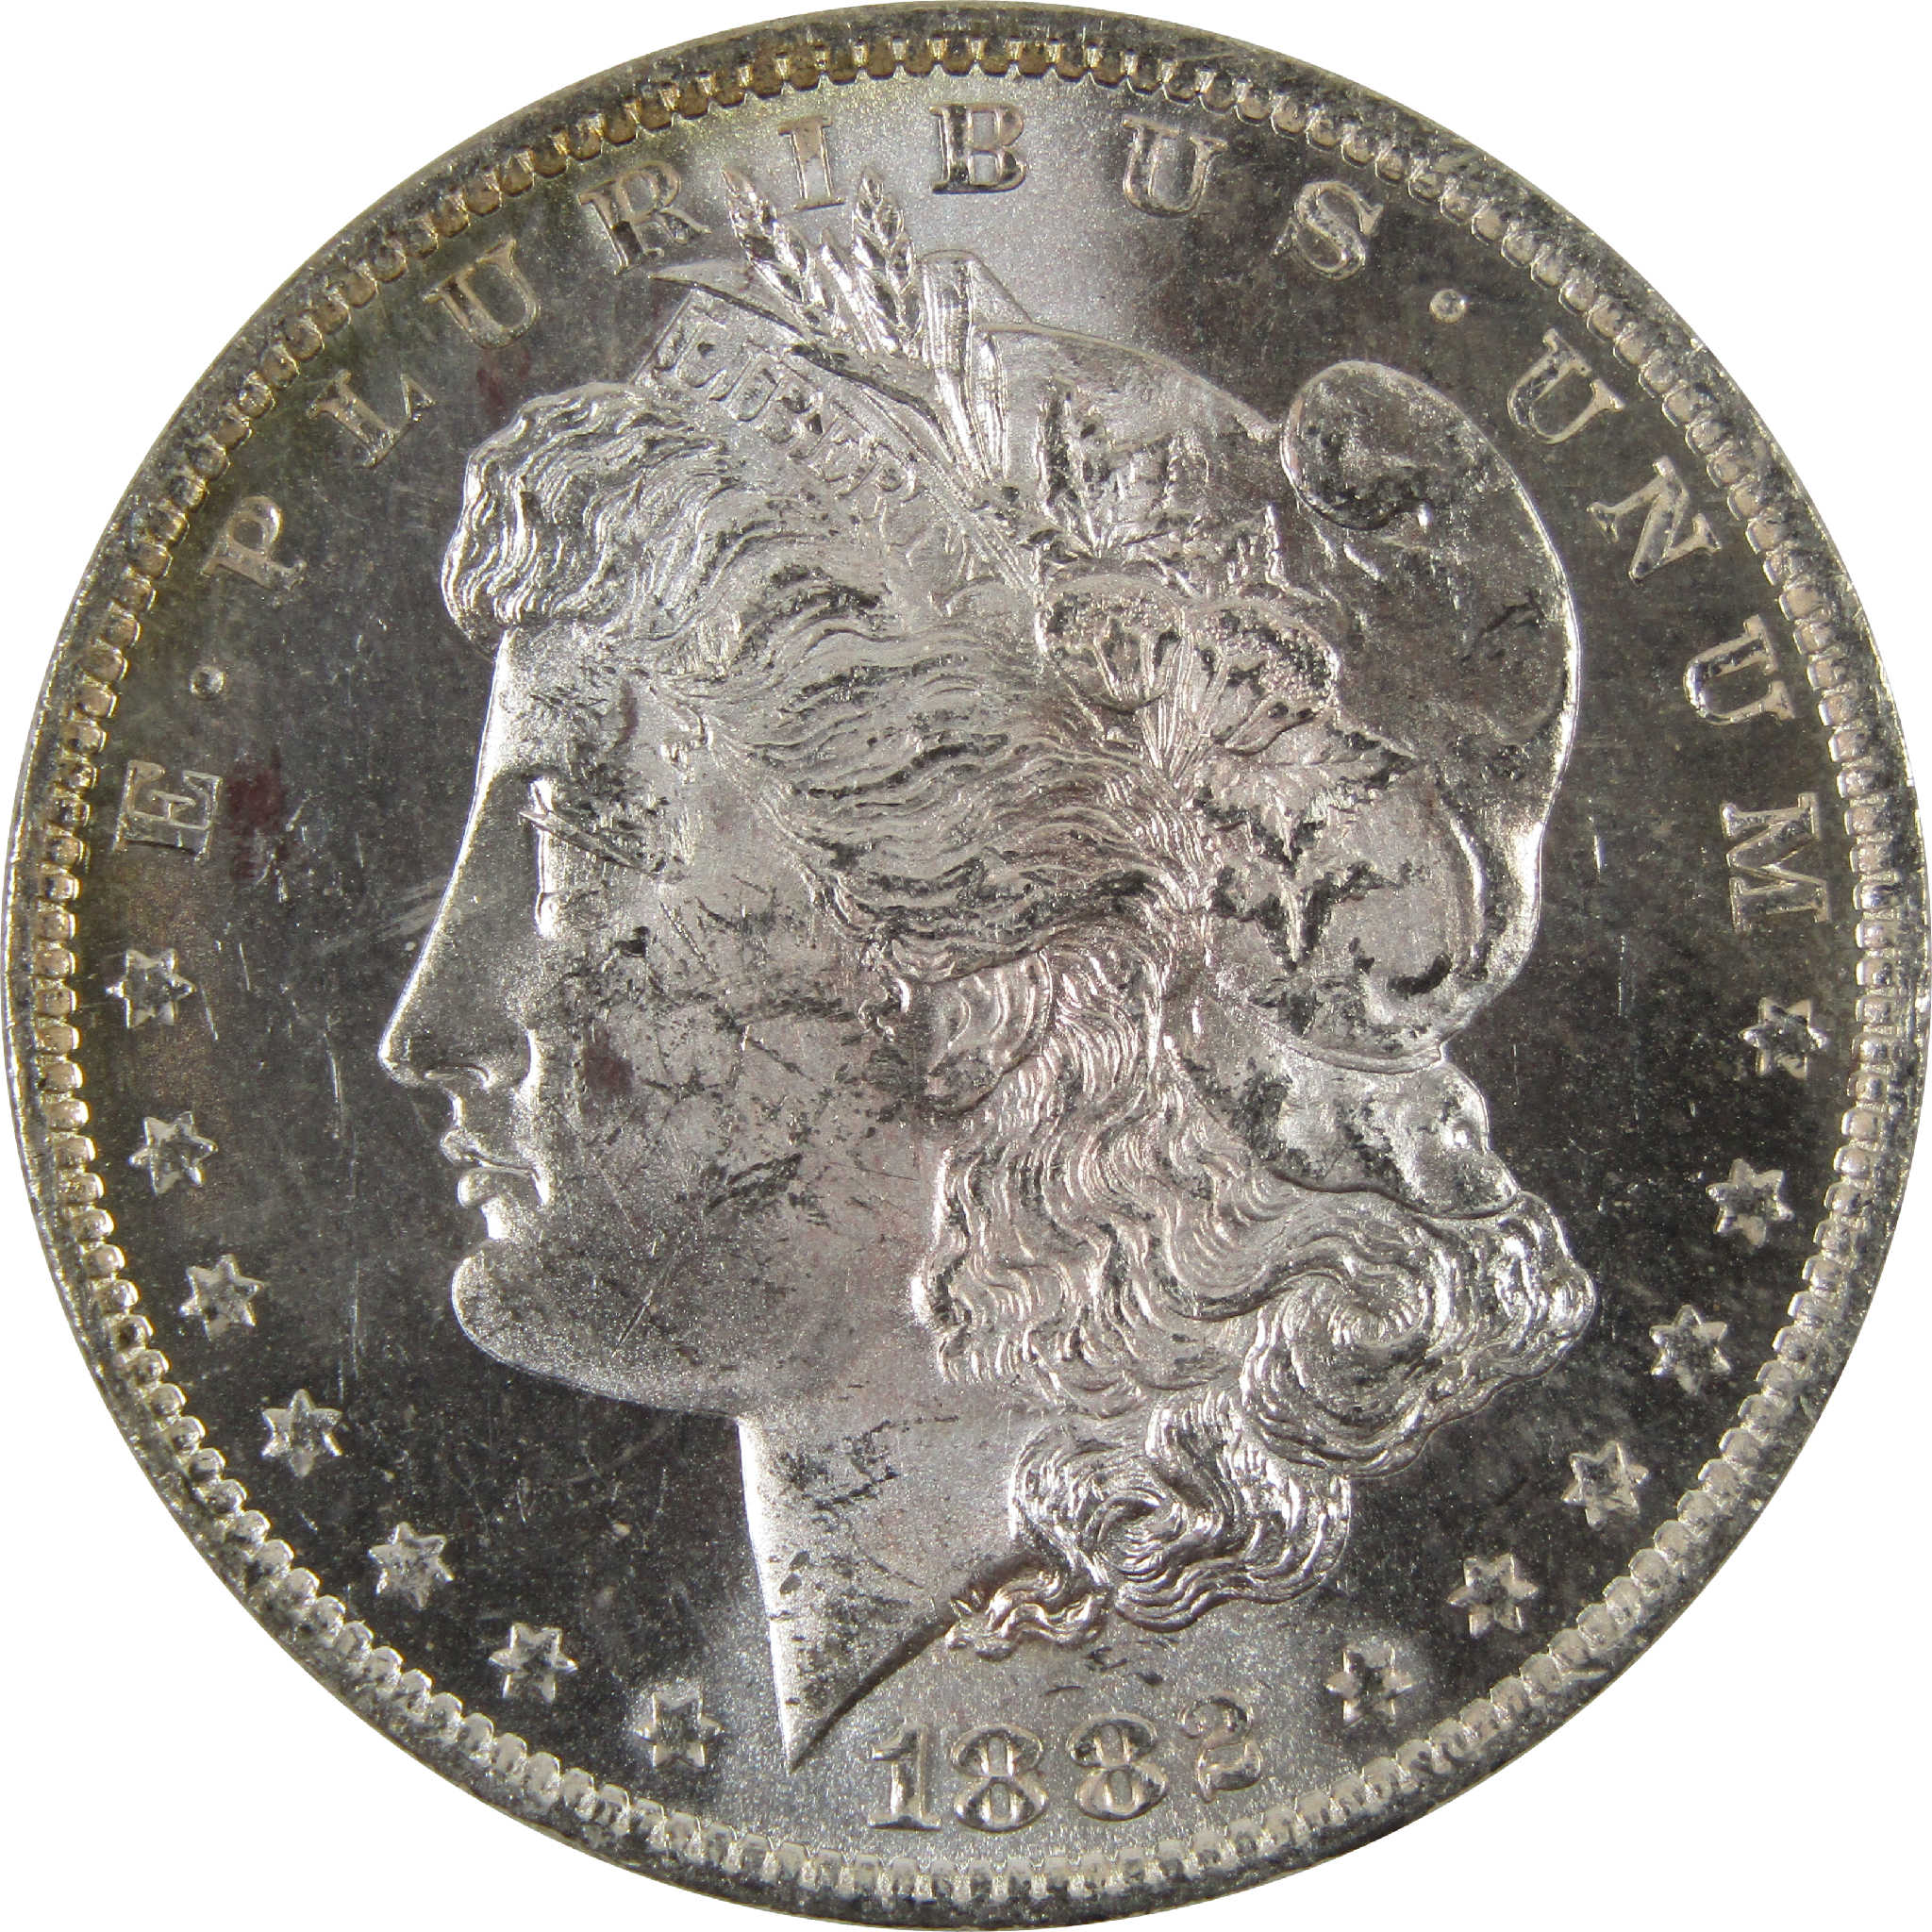 1882 O Morgan Dollar BU Uncirculated 90% Silver $1 Coin SKU:I8914 - Morgan coin - Morgan silver dollar - Morgan silver dollar for sale - Profile Coins &amp; Collectibles